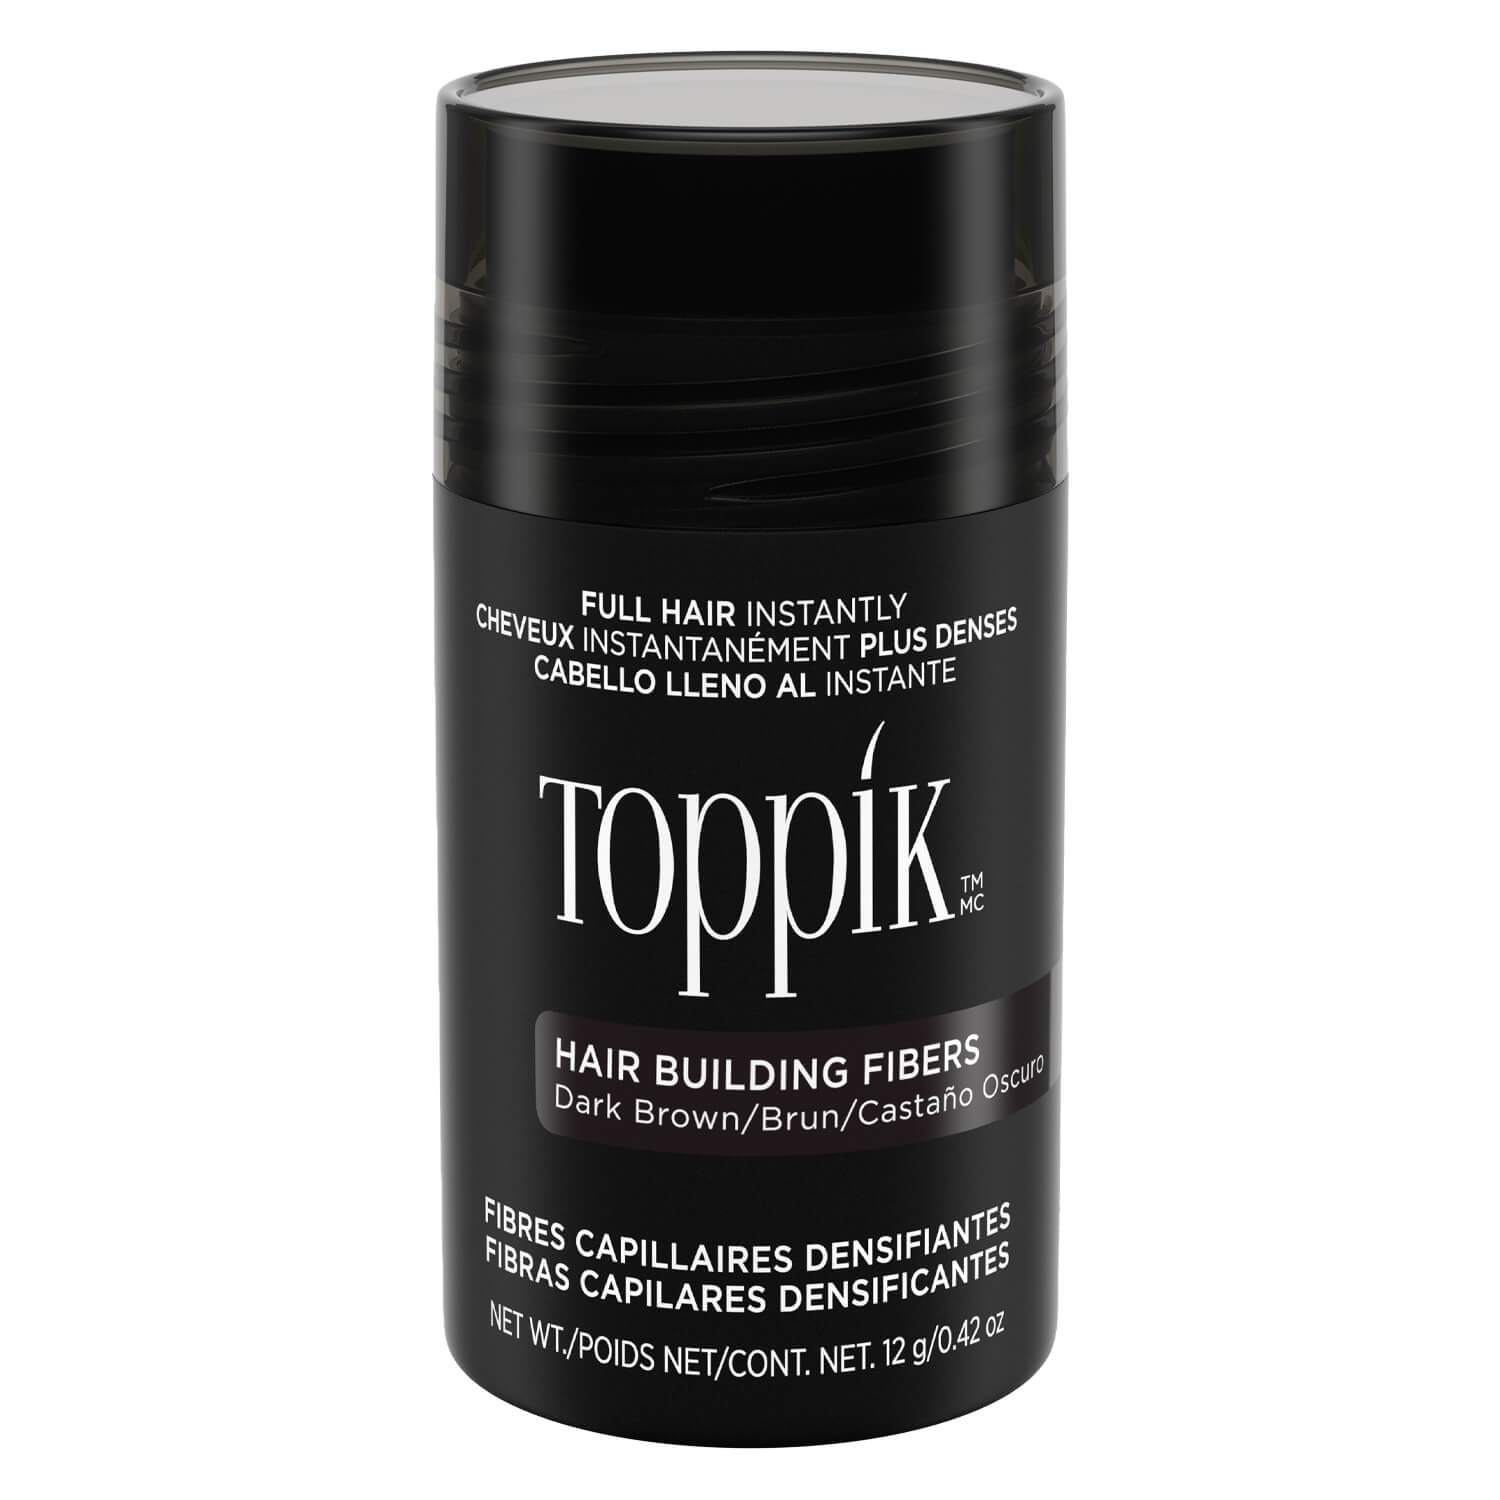 Produktbild von Toppik - Hair Building Fibers Dark Brown